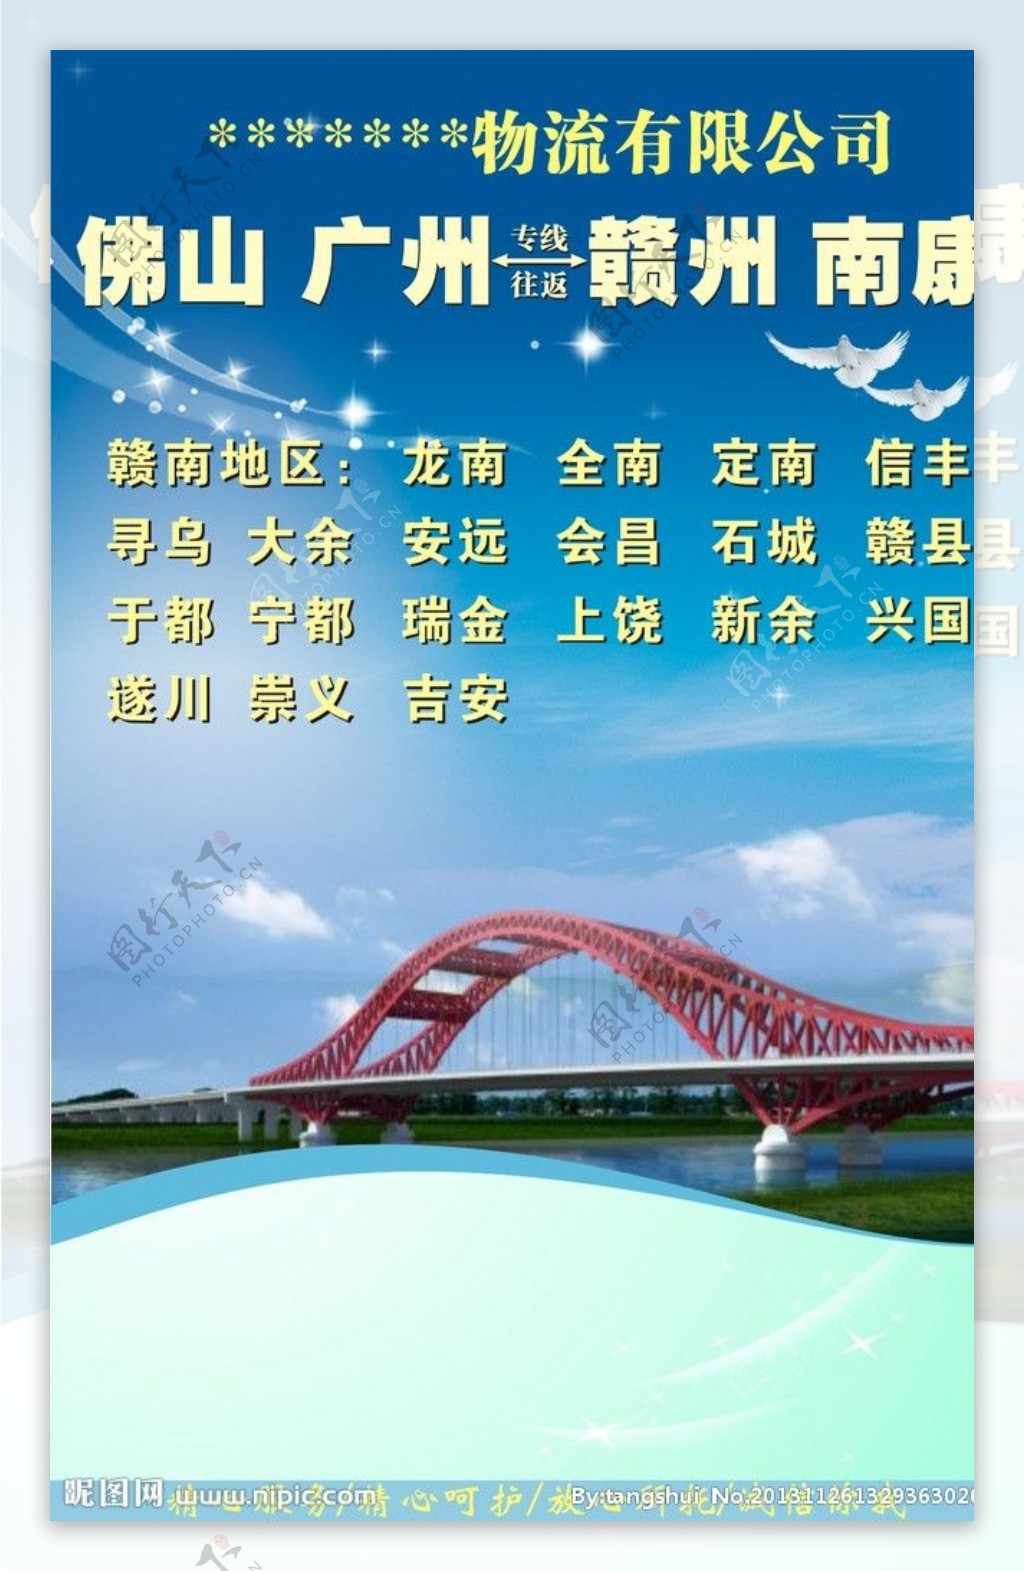 江西赣州市新世纪大桥图片